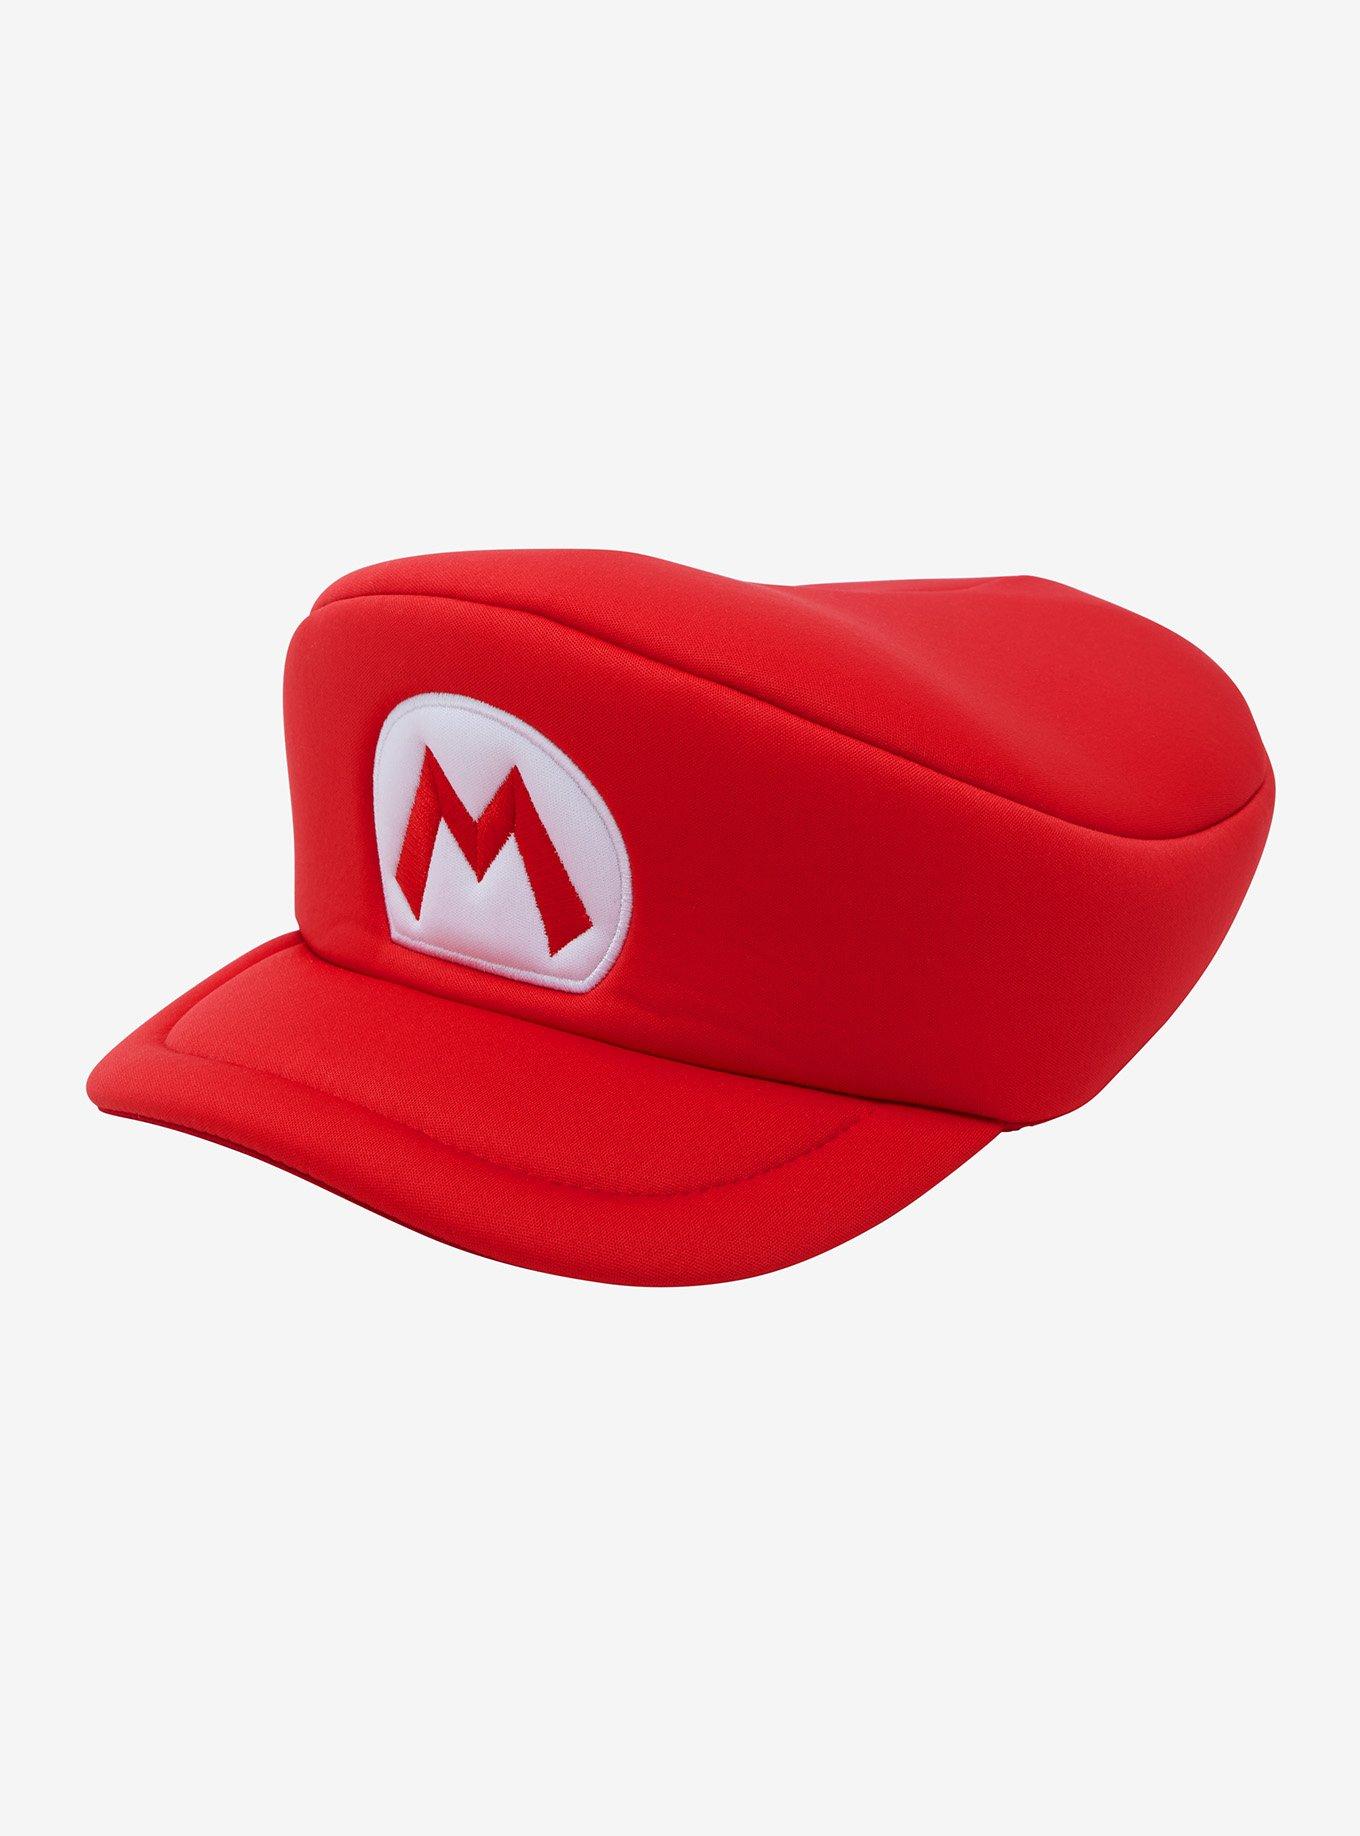 Nintendo Super Mario Cosplay Hat